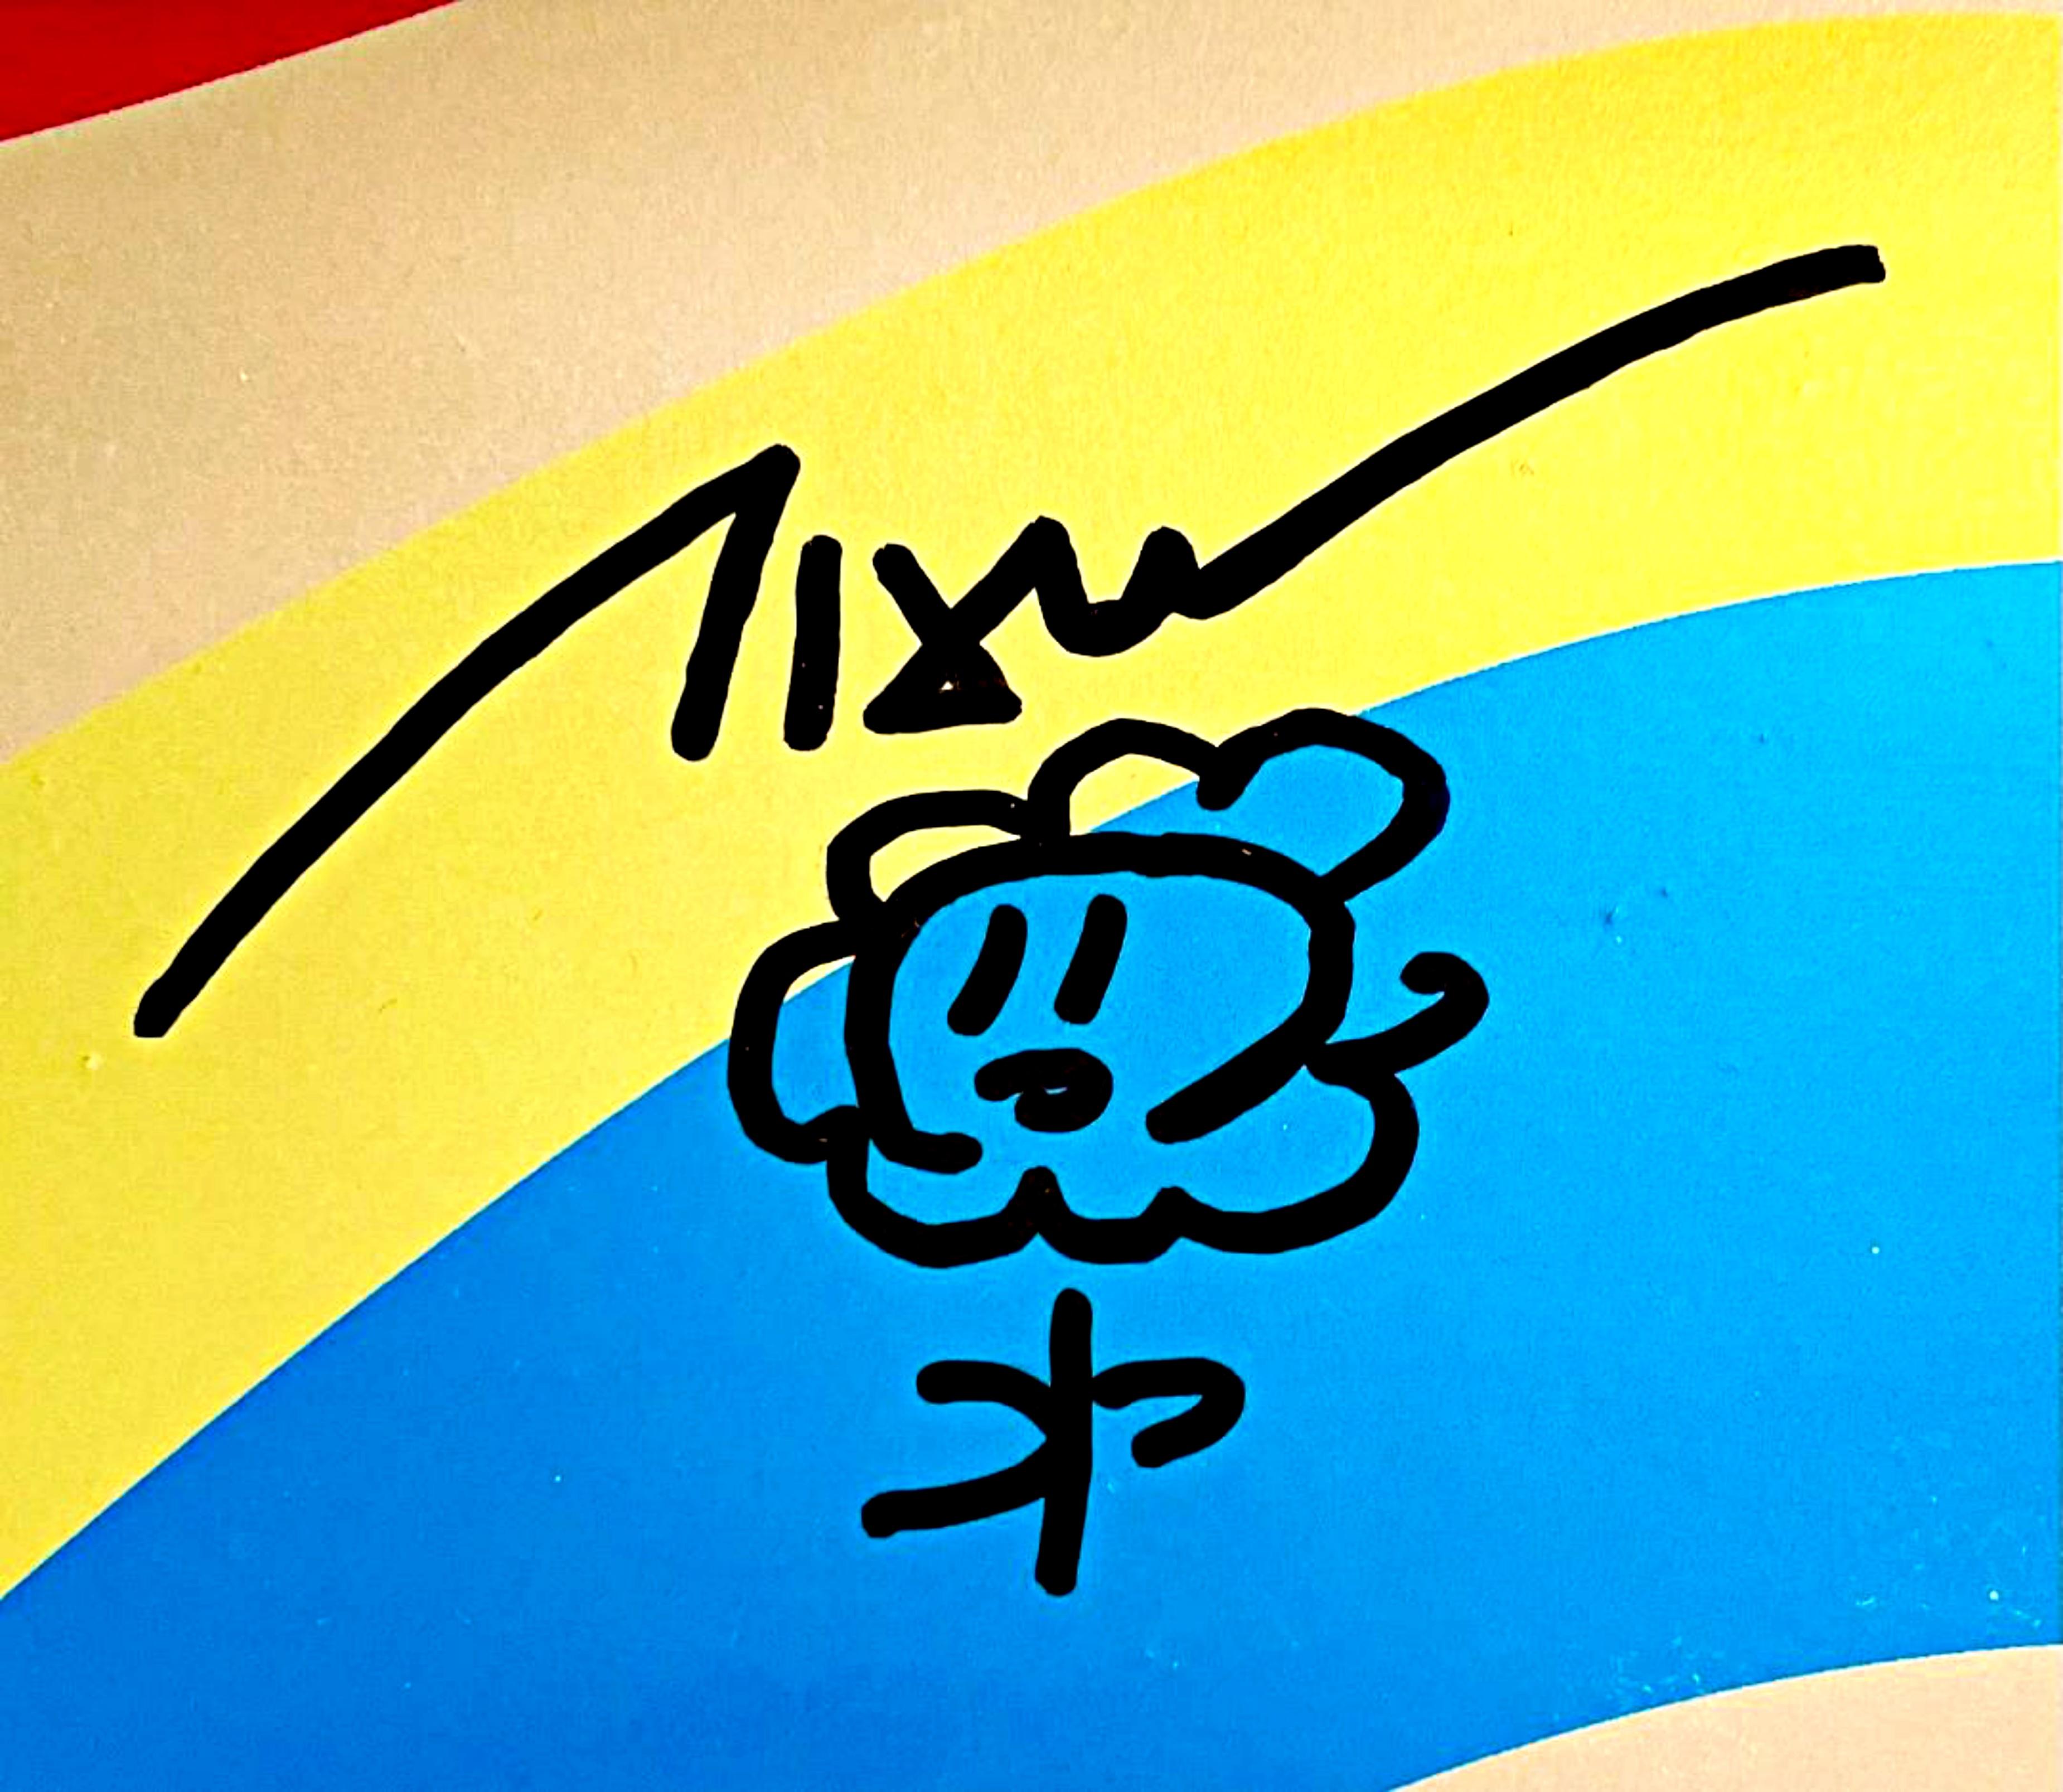 Dessin floral original signé à la main sur skateboard en édition limitée